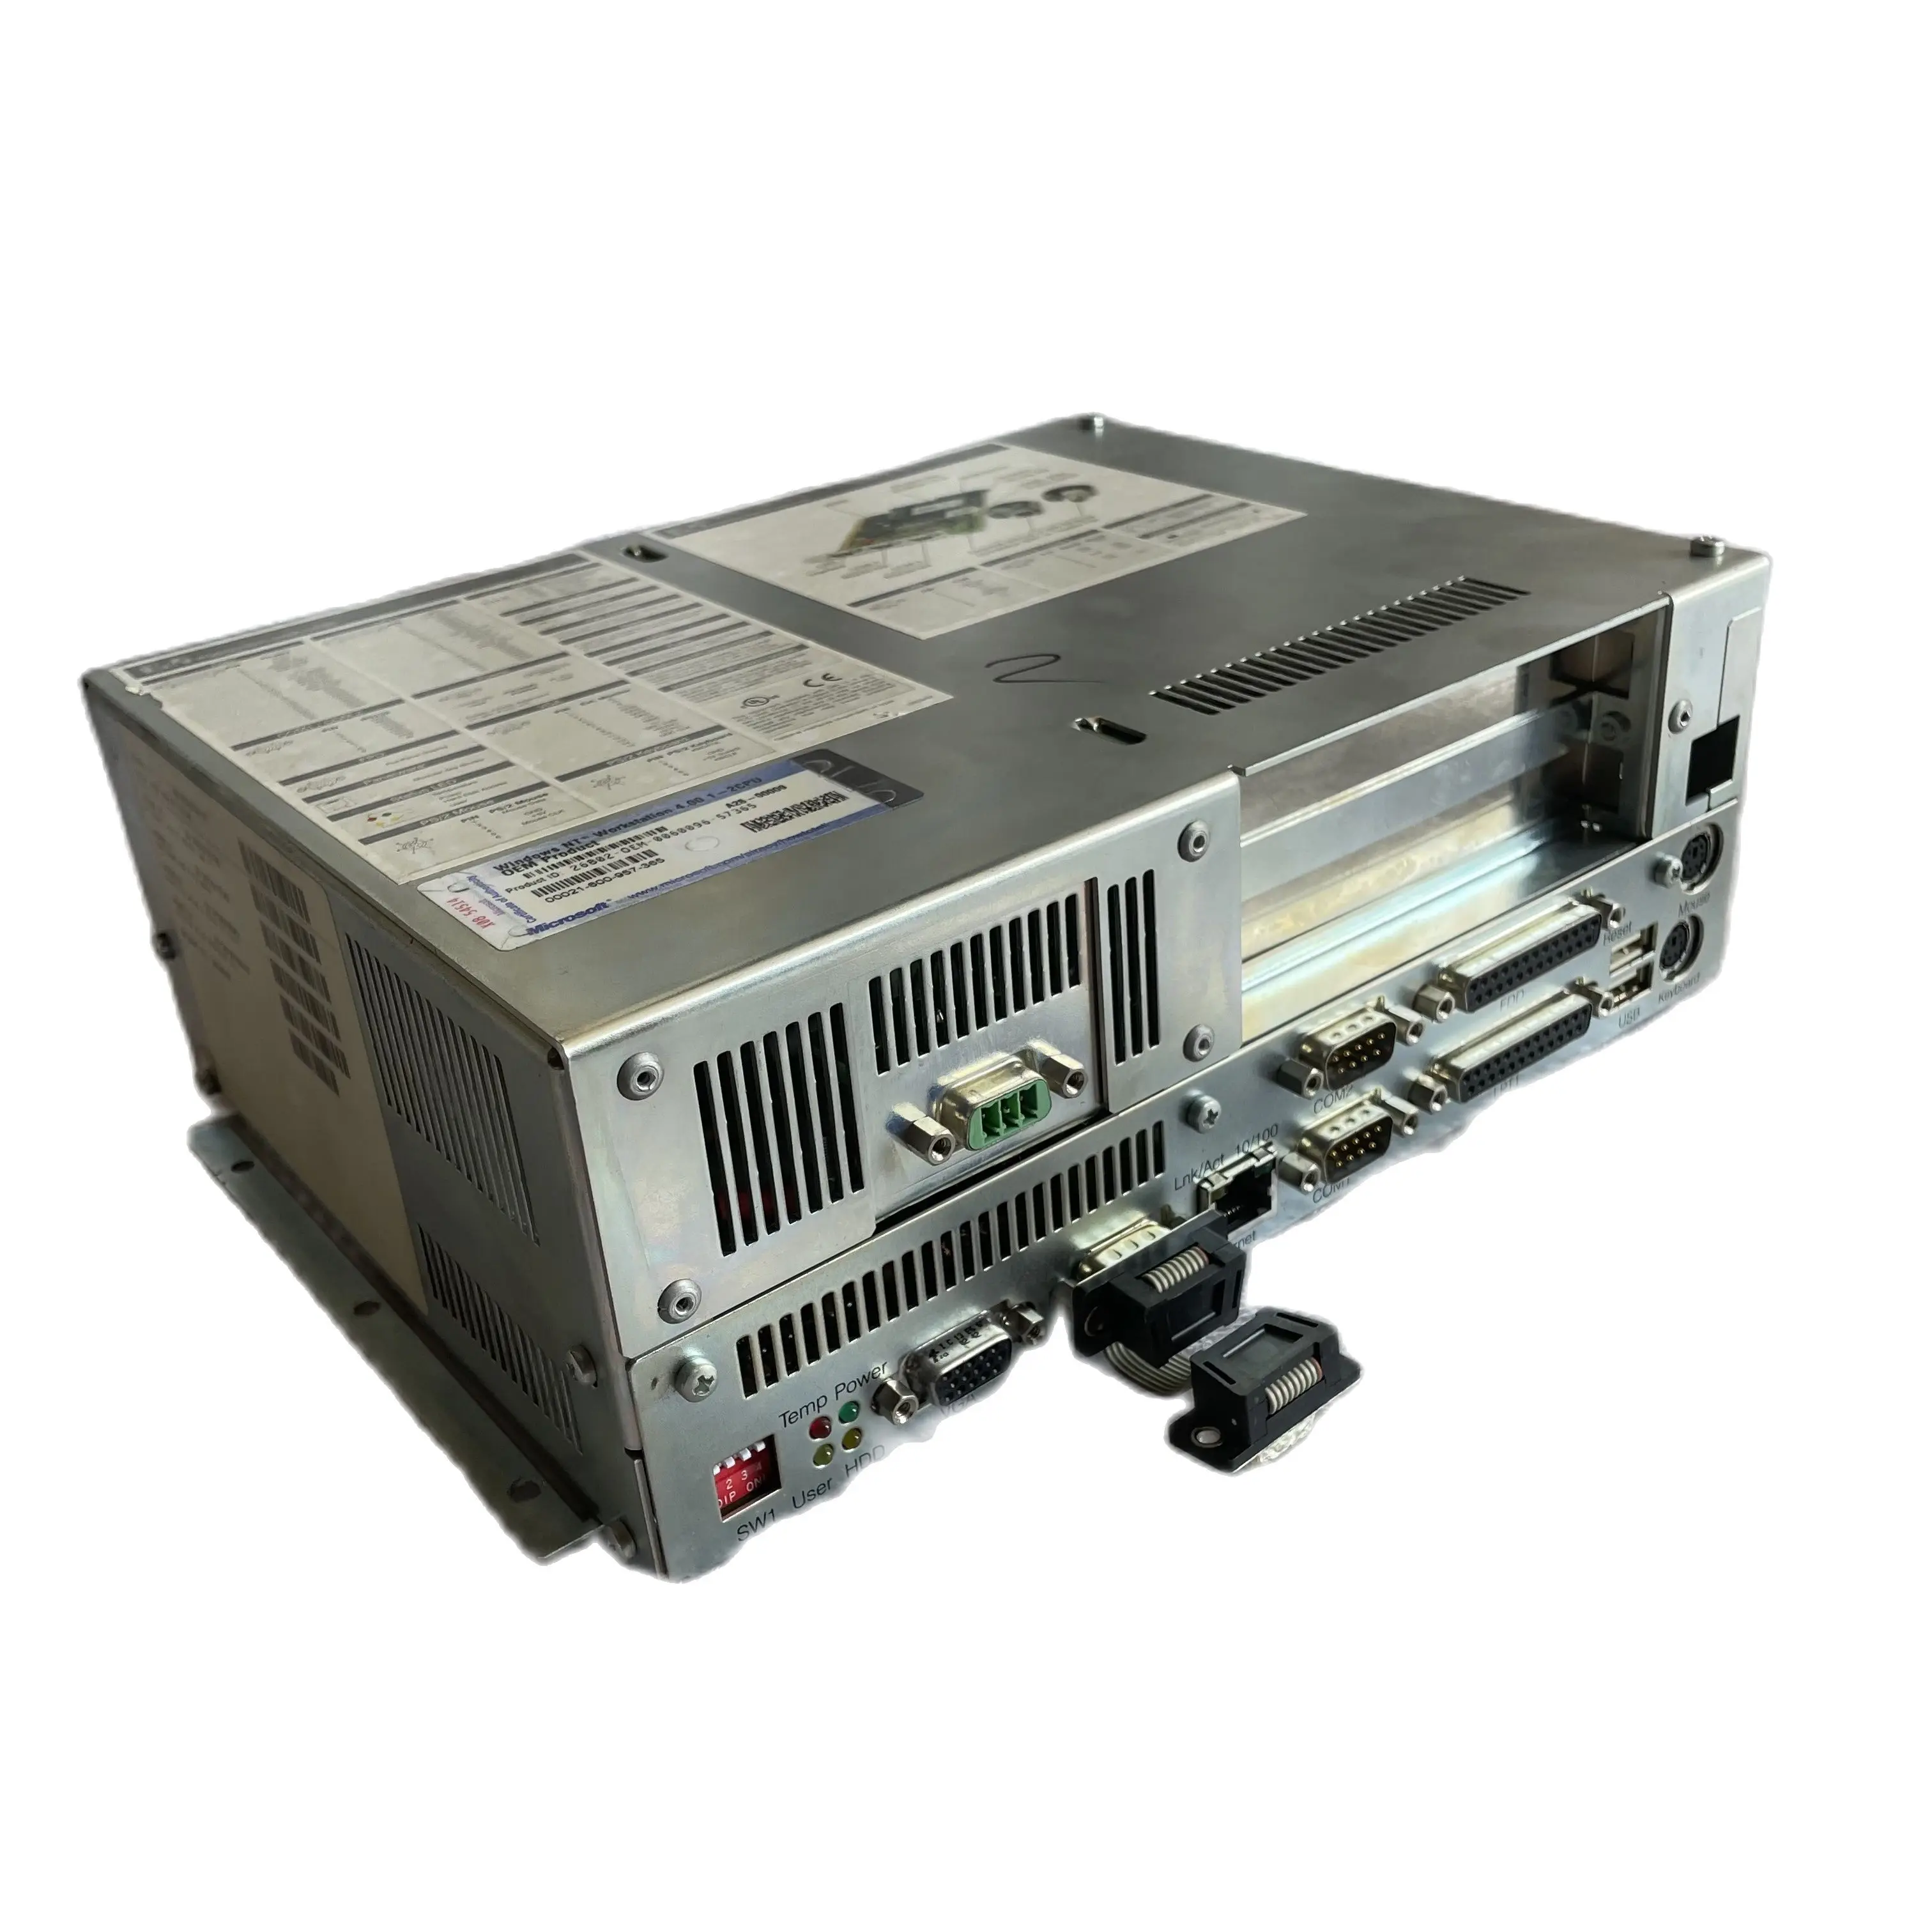 

B & R IPC 5000 5C5001.11 модуль ввода-вывода, используемый в хорошем состоянии